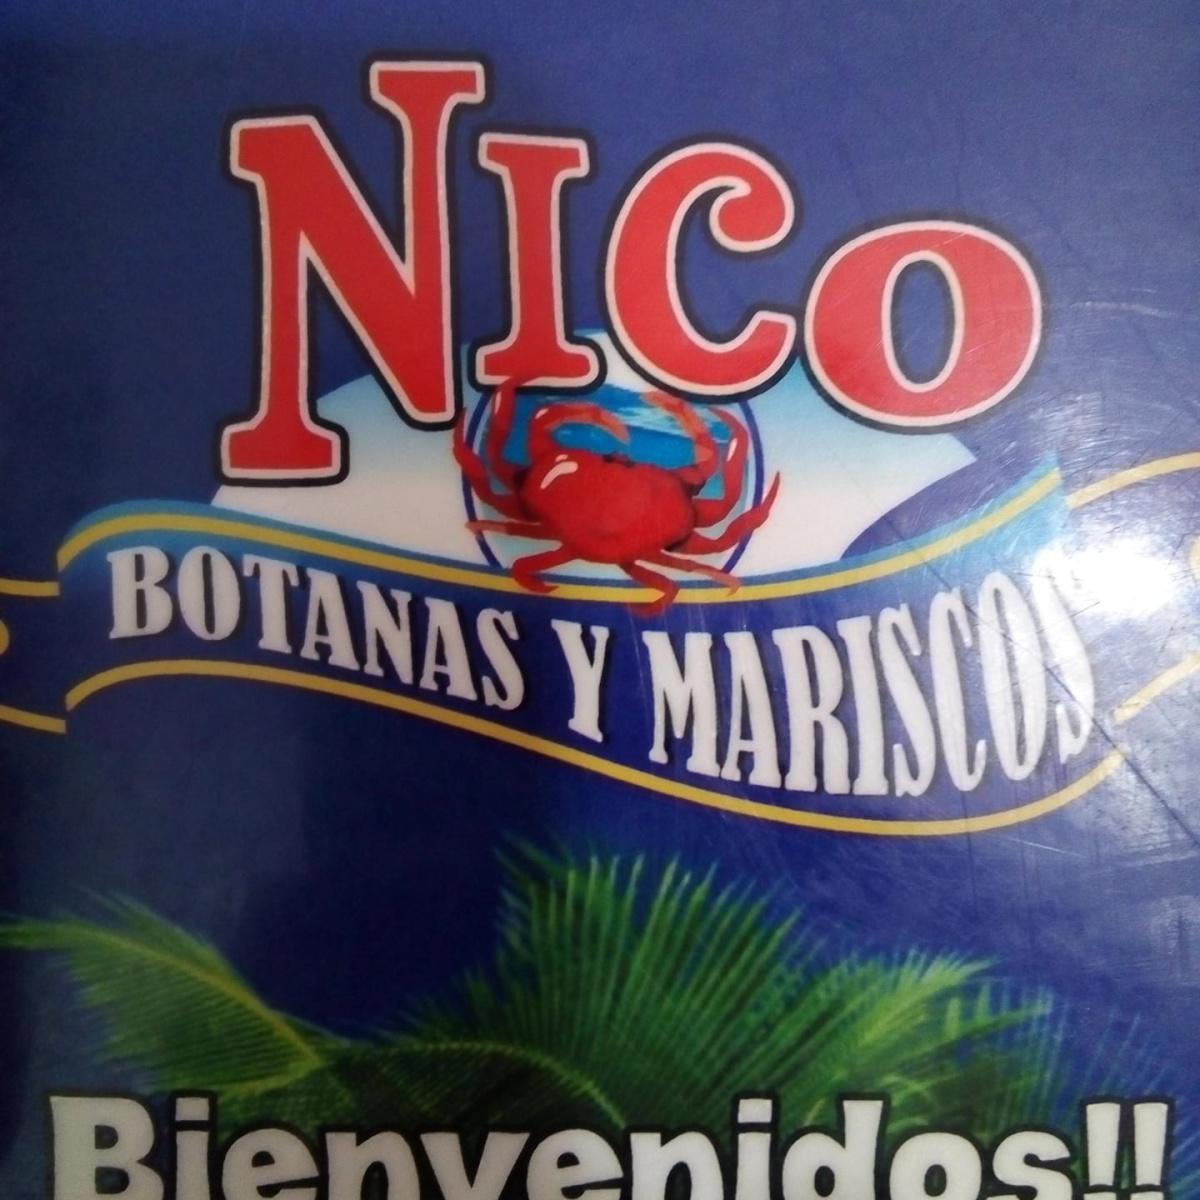 Botanas y Mariscos Nico